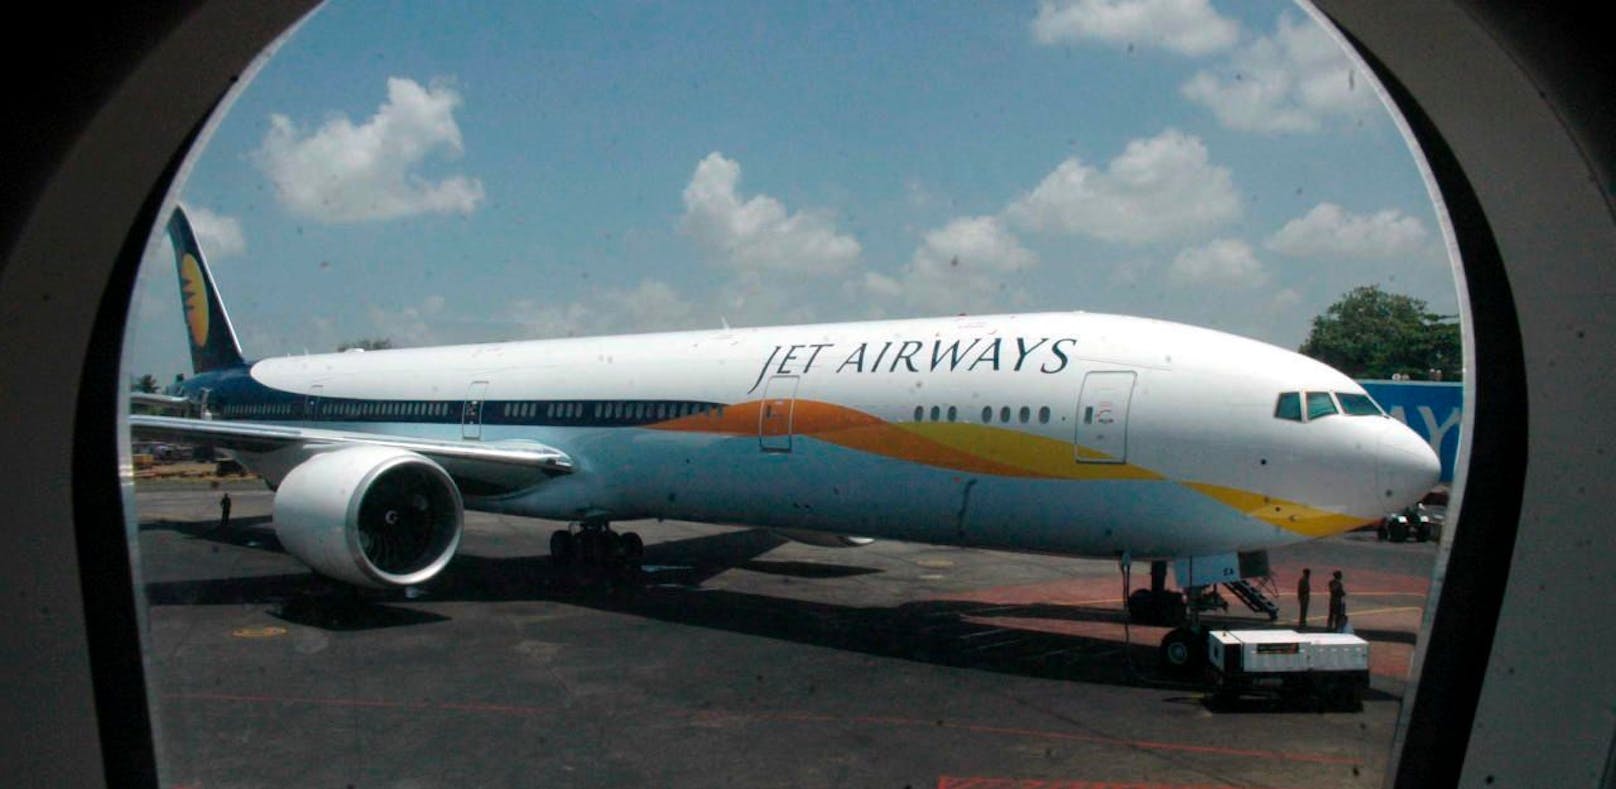 Seit 2007 fliegen die Boeing-777 für &quot;Jet Airways&quot;.